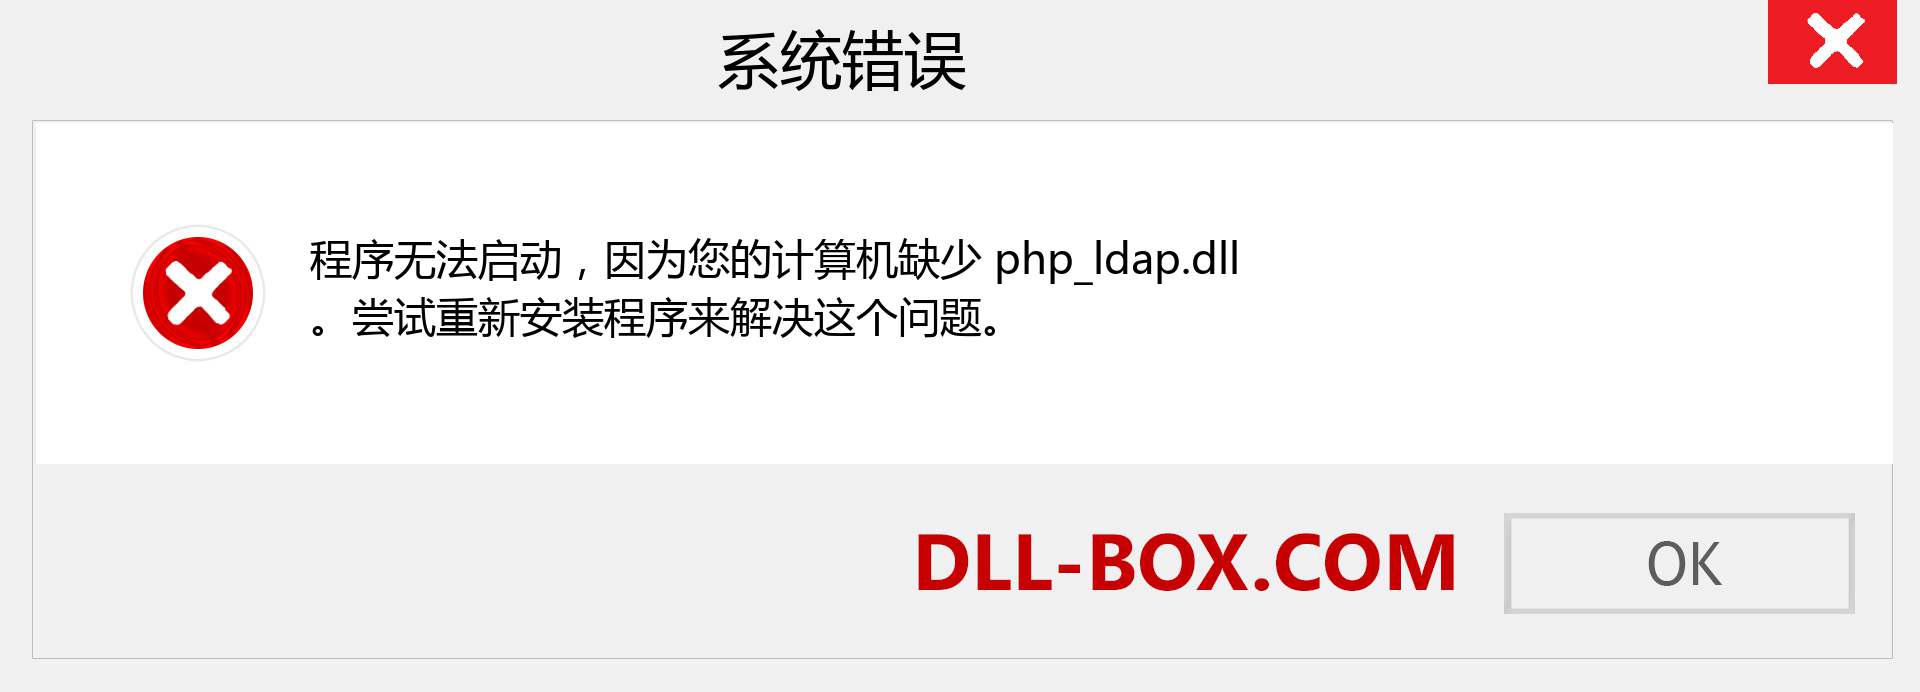 php_ldap.dll 文件丢失？。 适用于 Windows 7、8、10 的下载 - 修复 Windows、照片、图像上的 php_ldap dll 丢失错误